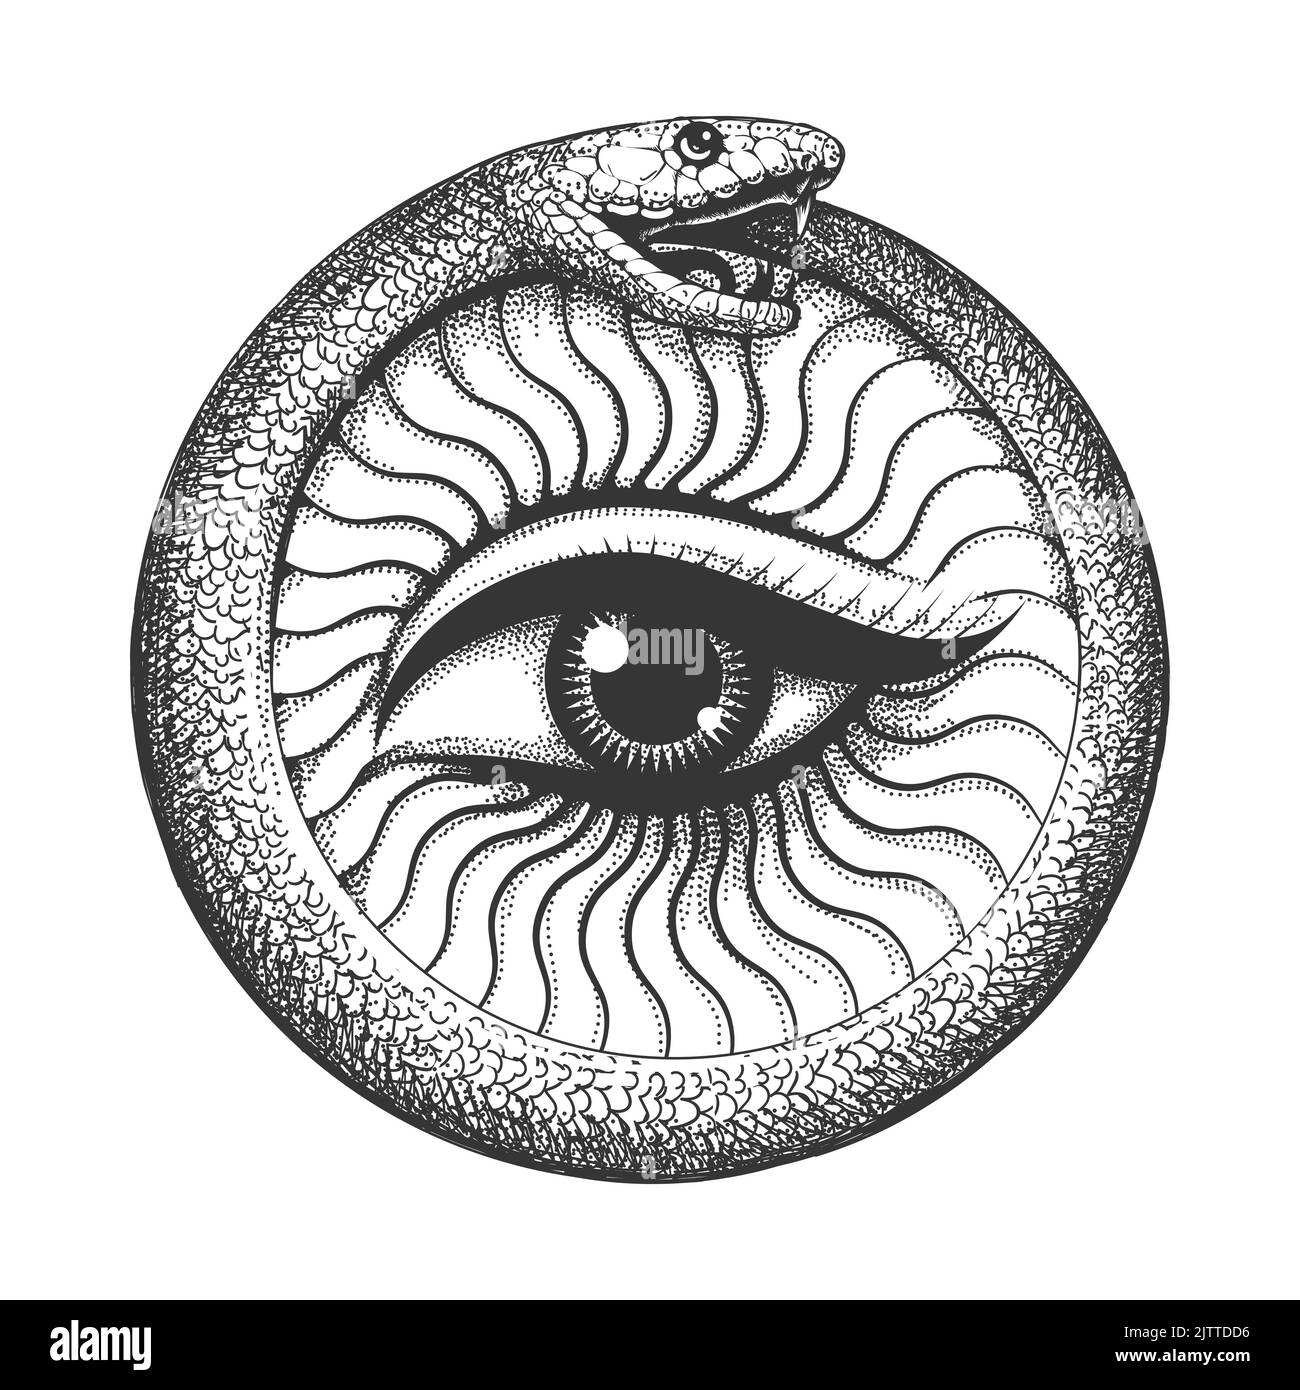 Tätowierung von Ouroboros Schlange mit Auge innen esoterisches Symbol auf weiß isoliert. Vektorgrafik Stock Vektor